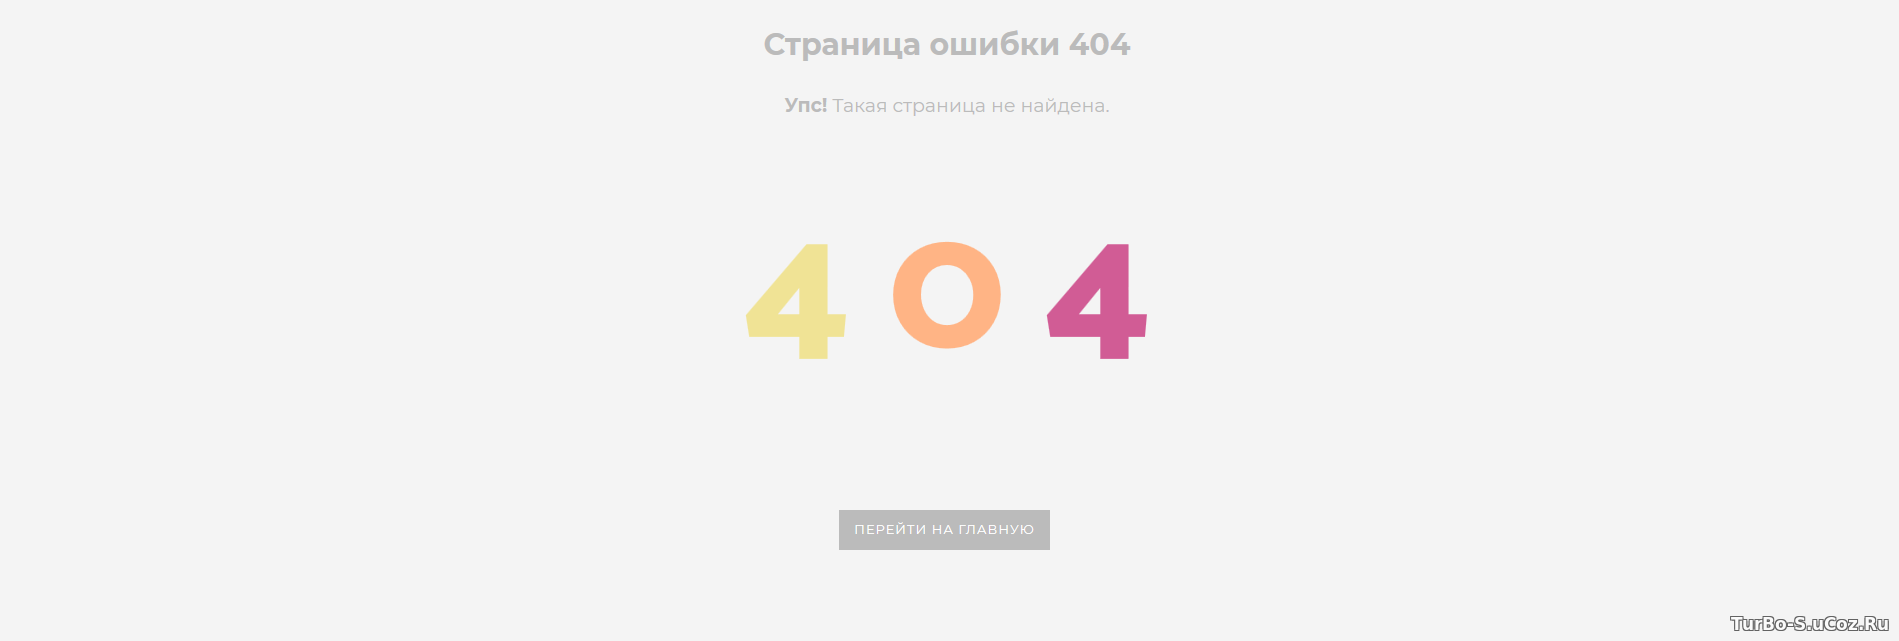 Страница ошибки 404 для сайта